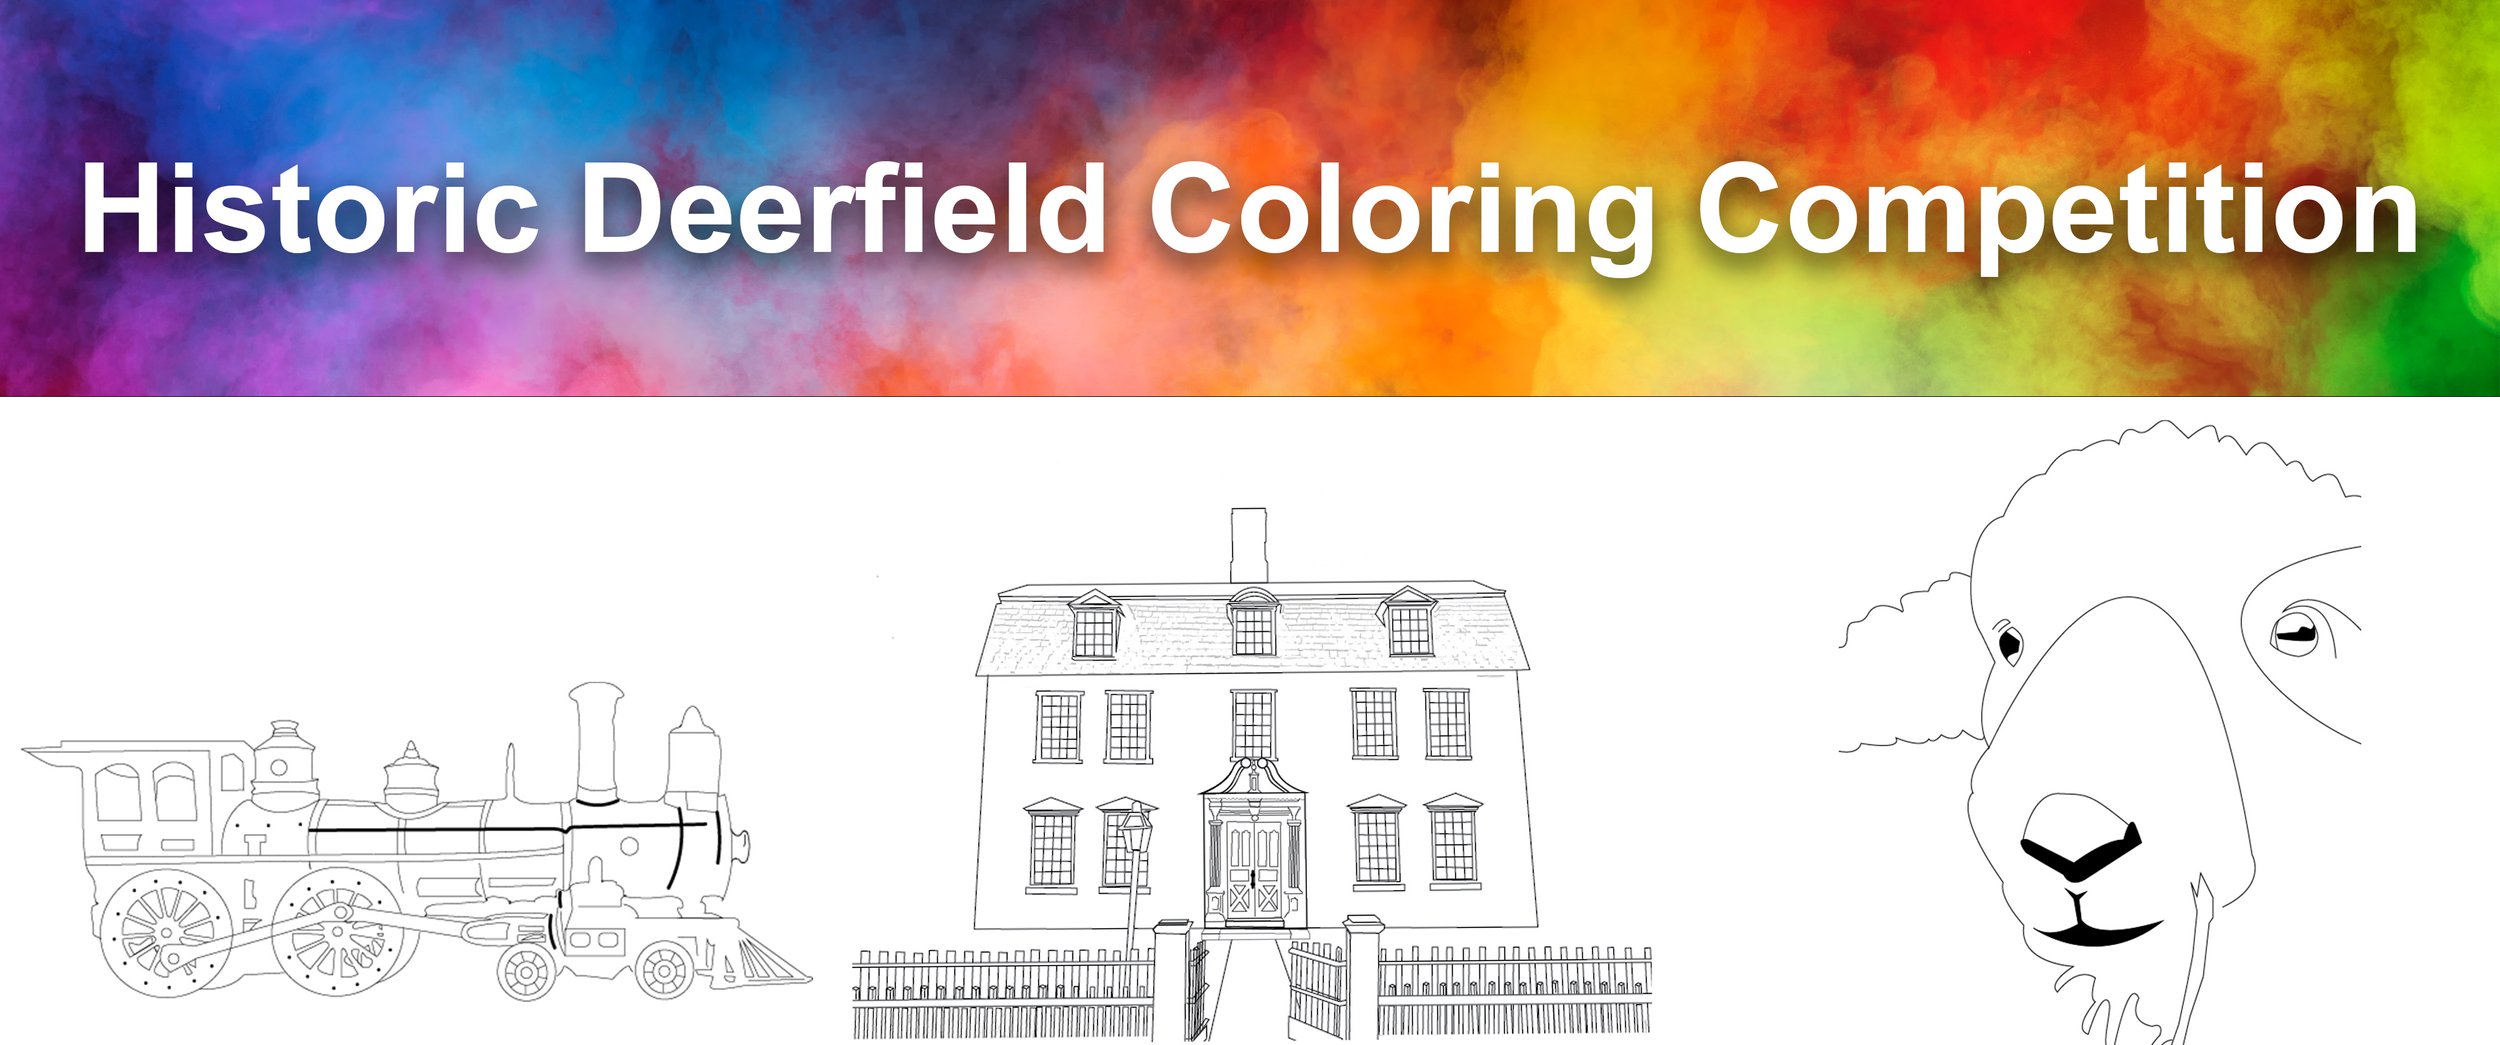 Color Deerfield